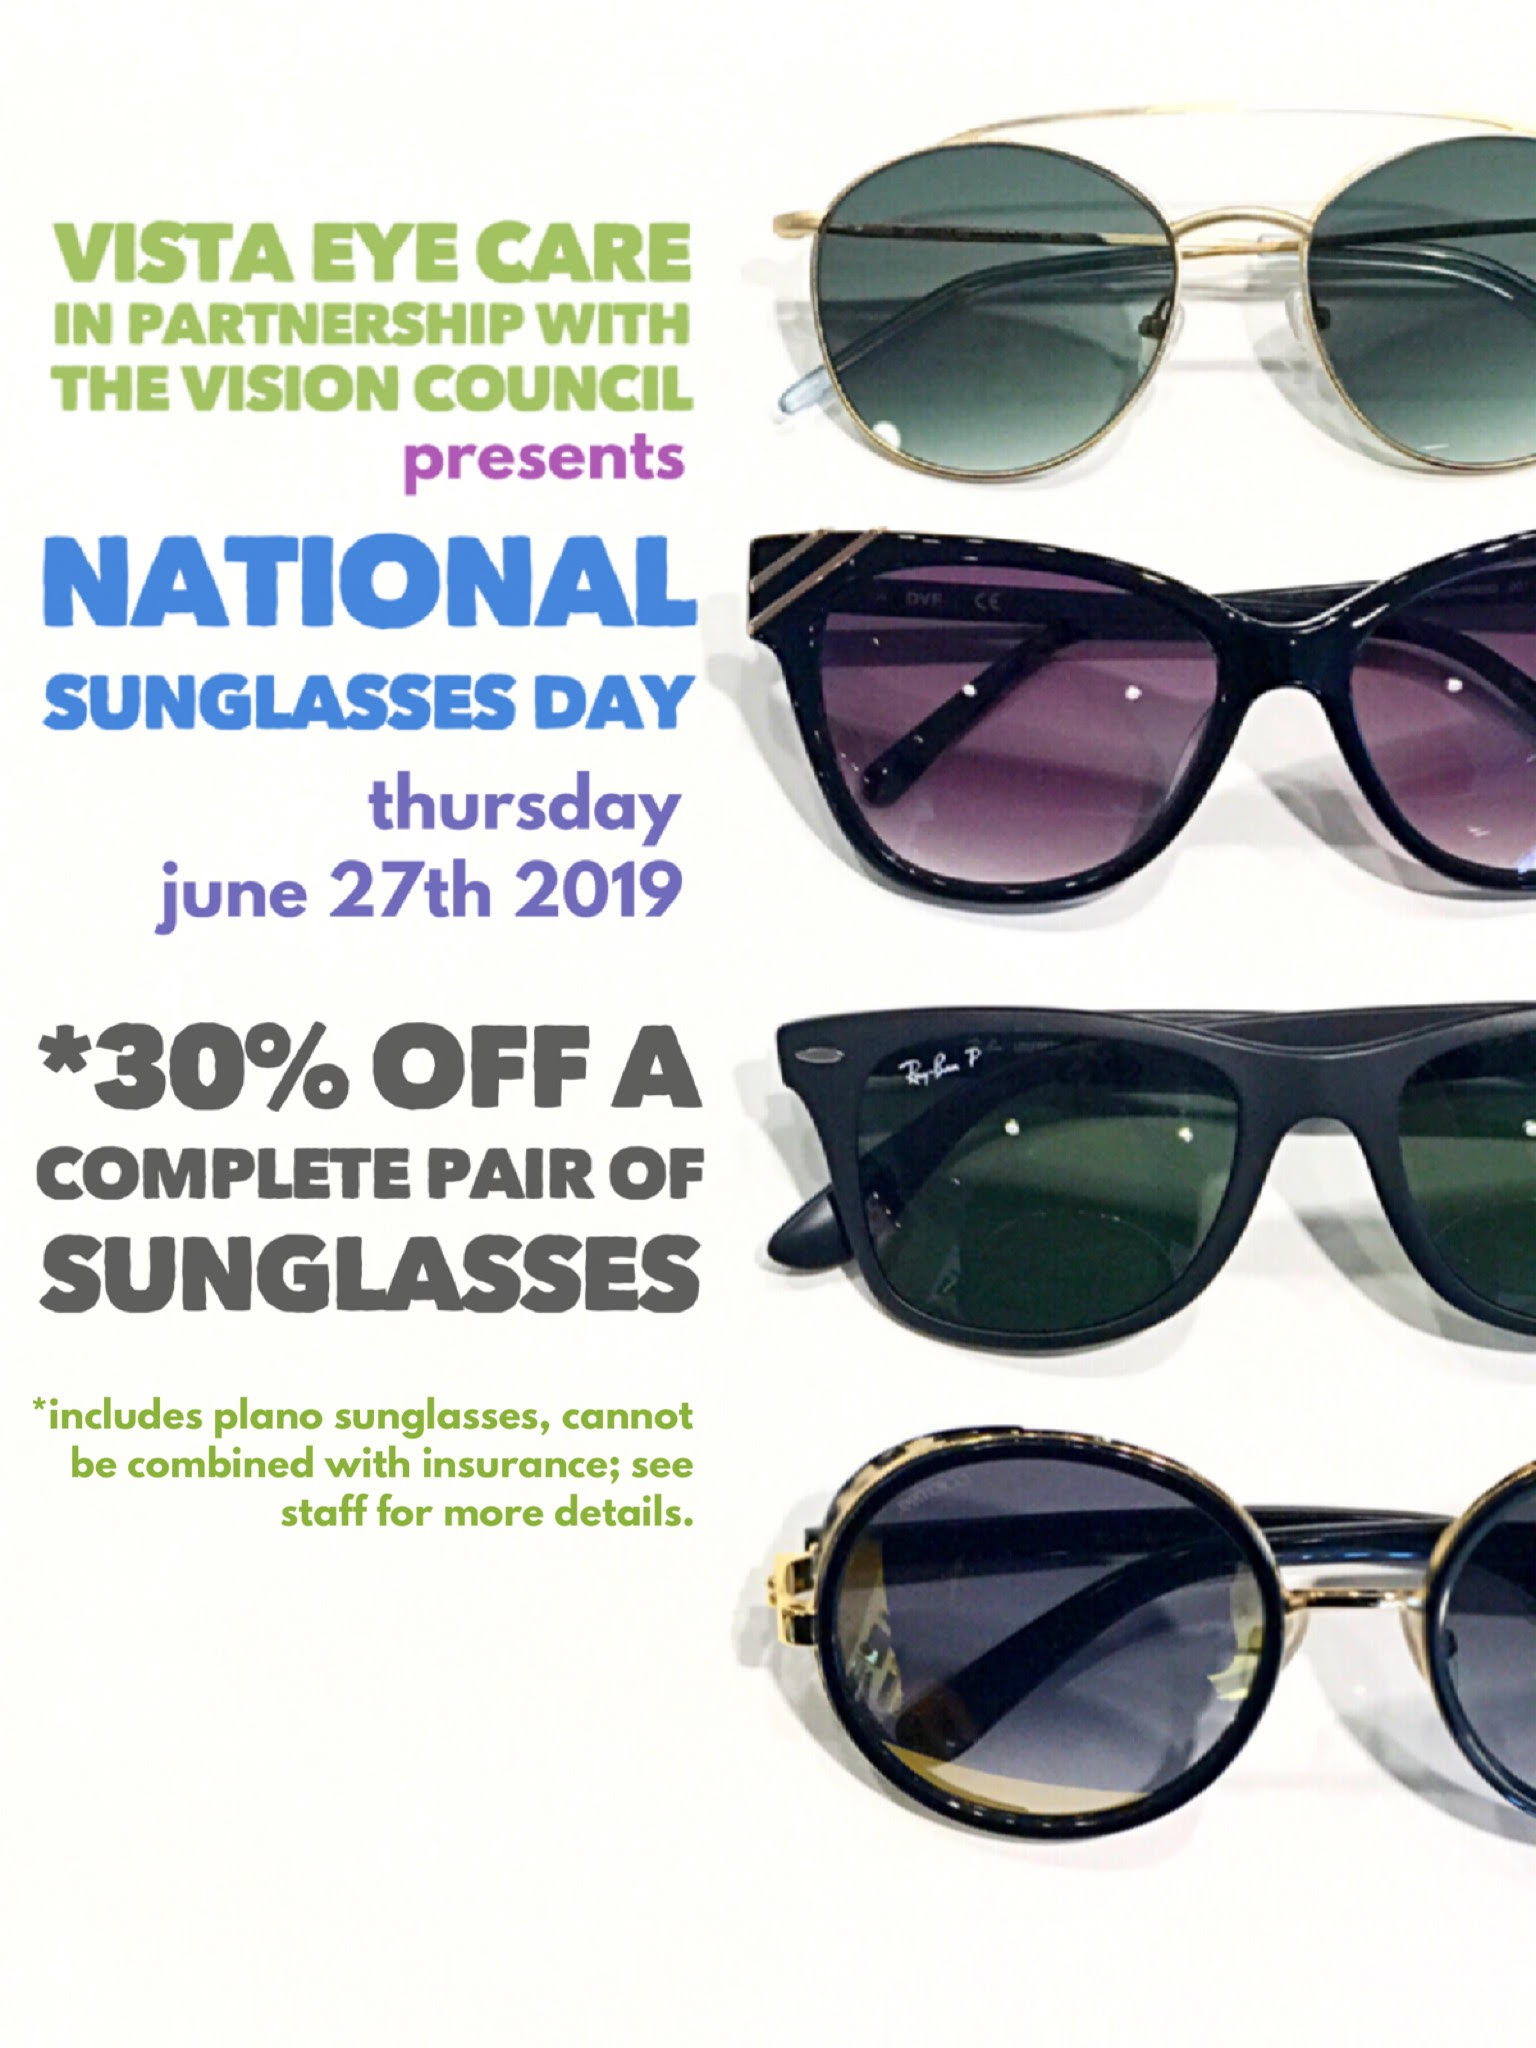 Join Us For National Sunglasses Day on Thursday, June 27th! Vista Eye